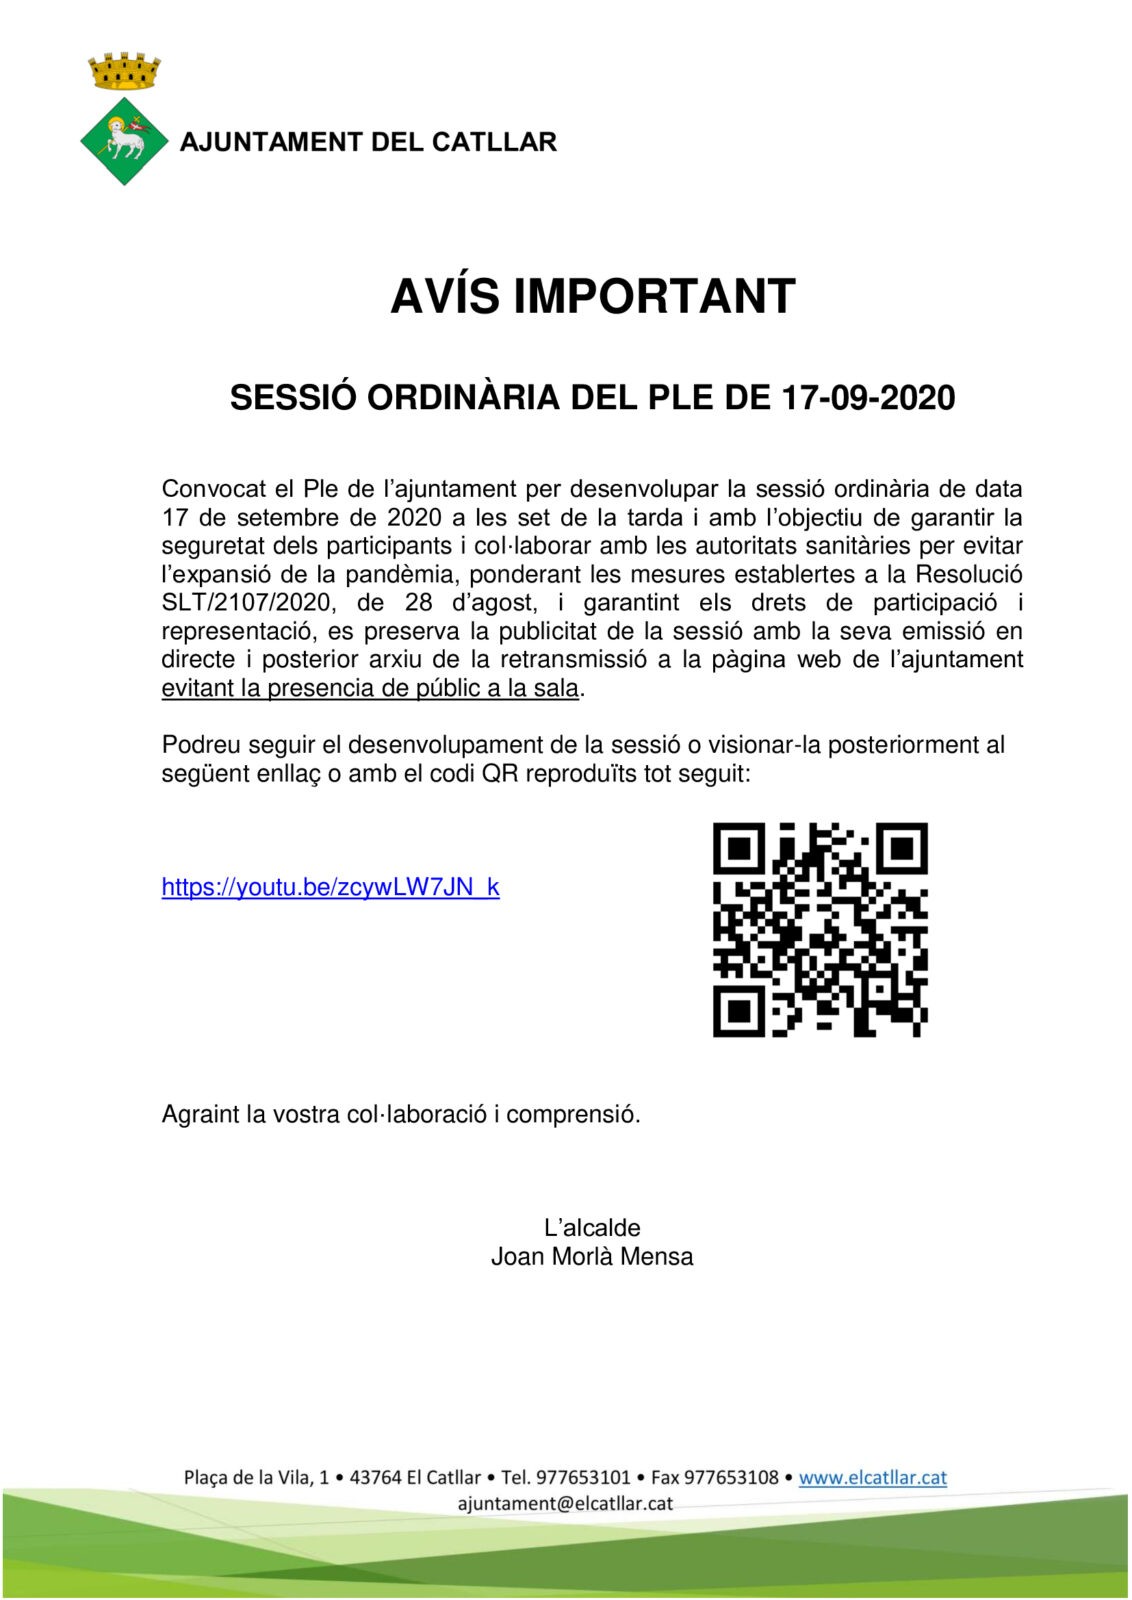 AVÍS IMPORTANT – SESSIÓ ORDINÀRIA DEL PLE DE 17/09/2020